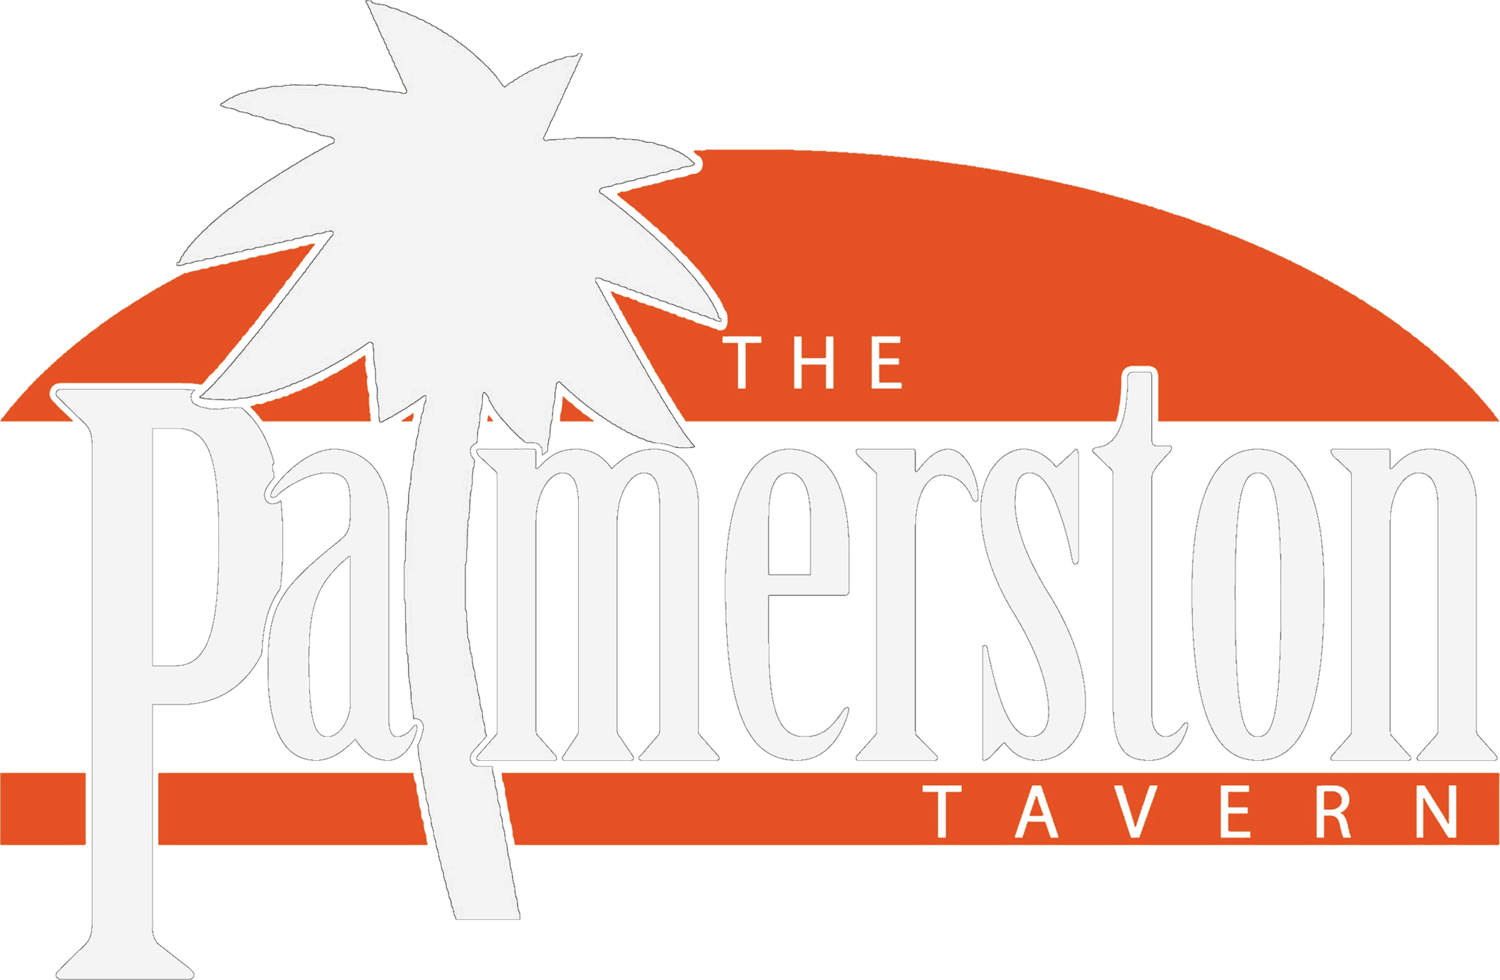 Palmerston Tavern, Palmerston, NT